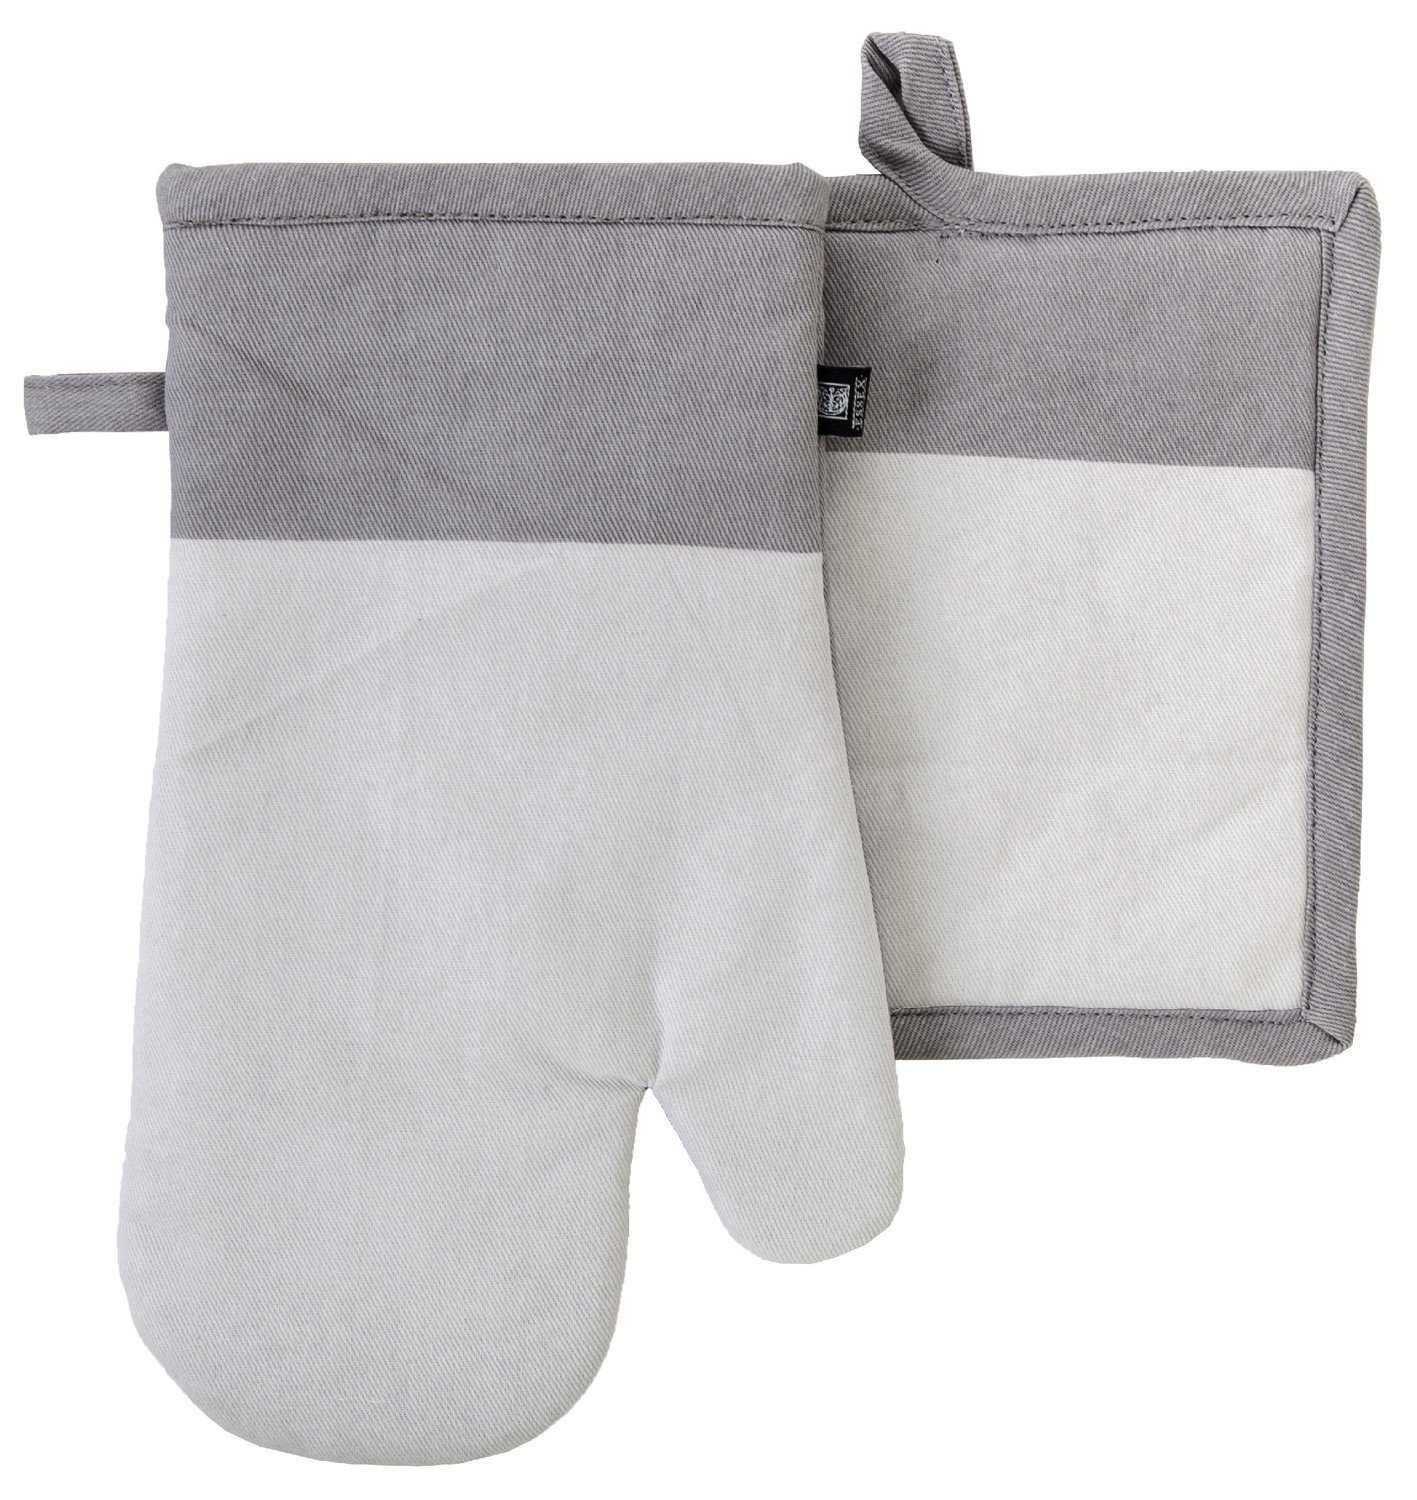 Kuchyňský SET rukavice/chňapka UNIVERSAL světle šedá, 18x30 cm/20X20 cm ESSEX, 100% bavlna